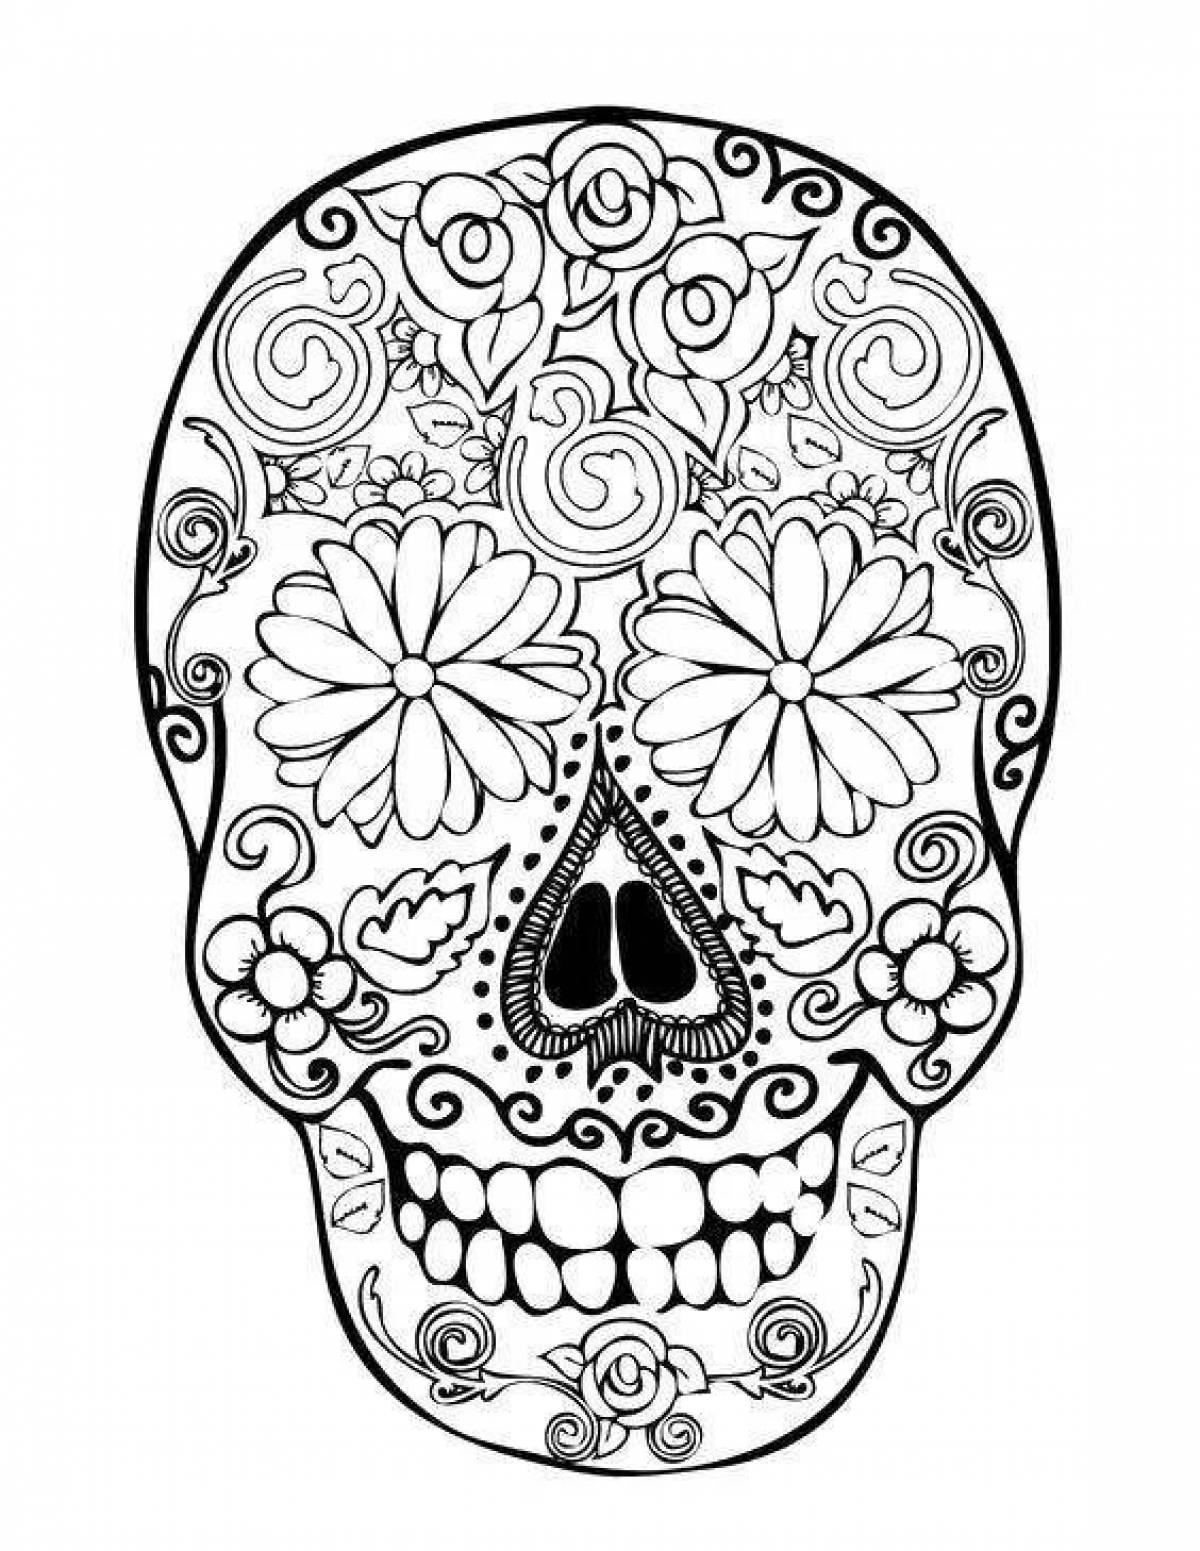 Delightful anti-stress skull coloring